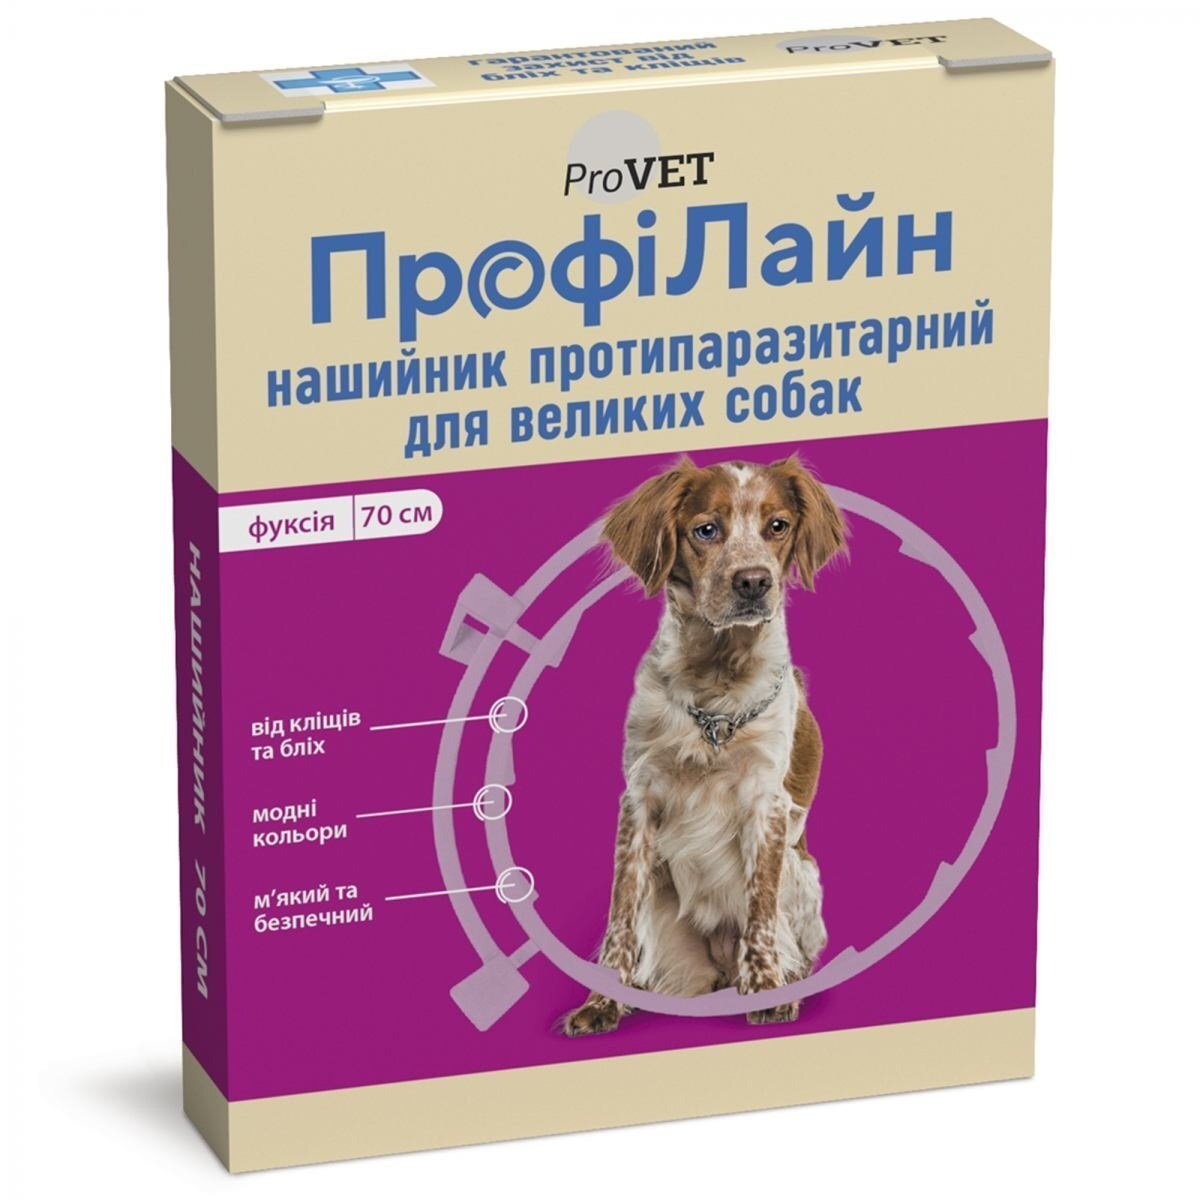 Ошейник противопаразитарный ProVET ПрофиЛайн для больших пород собак, 70 см, фуксия фото 